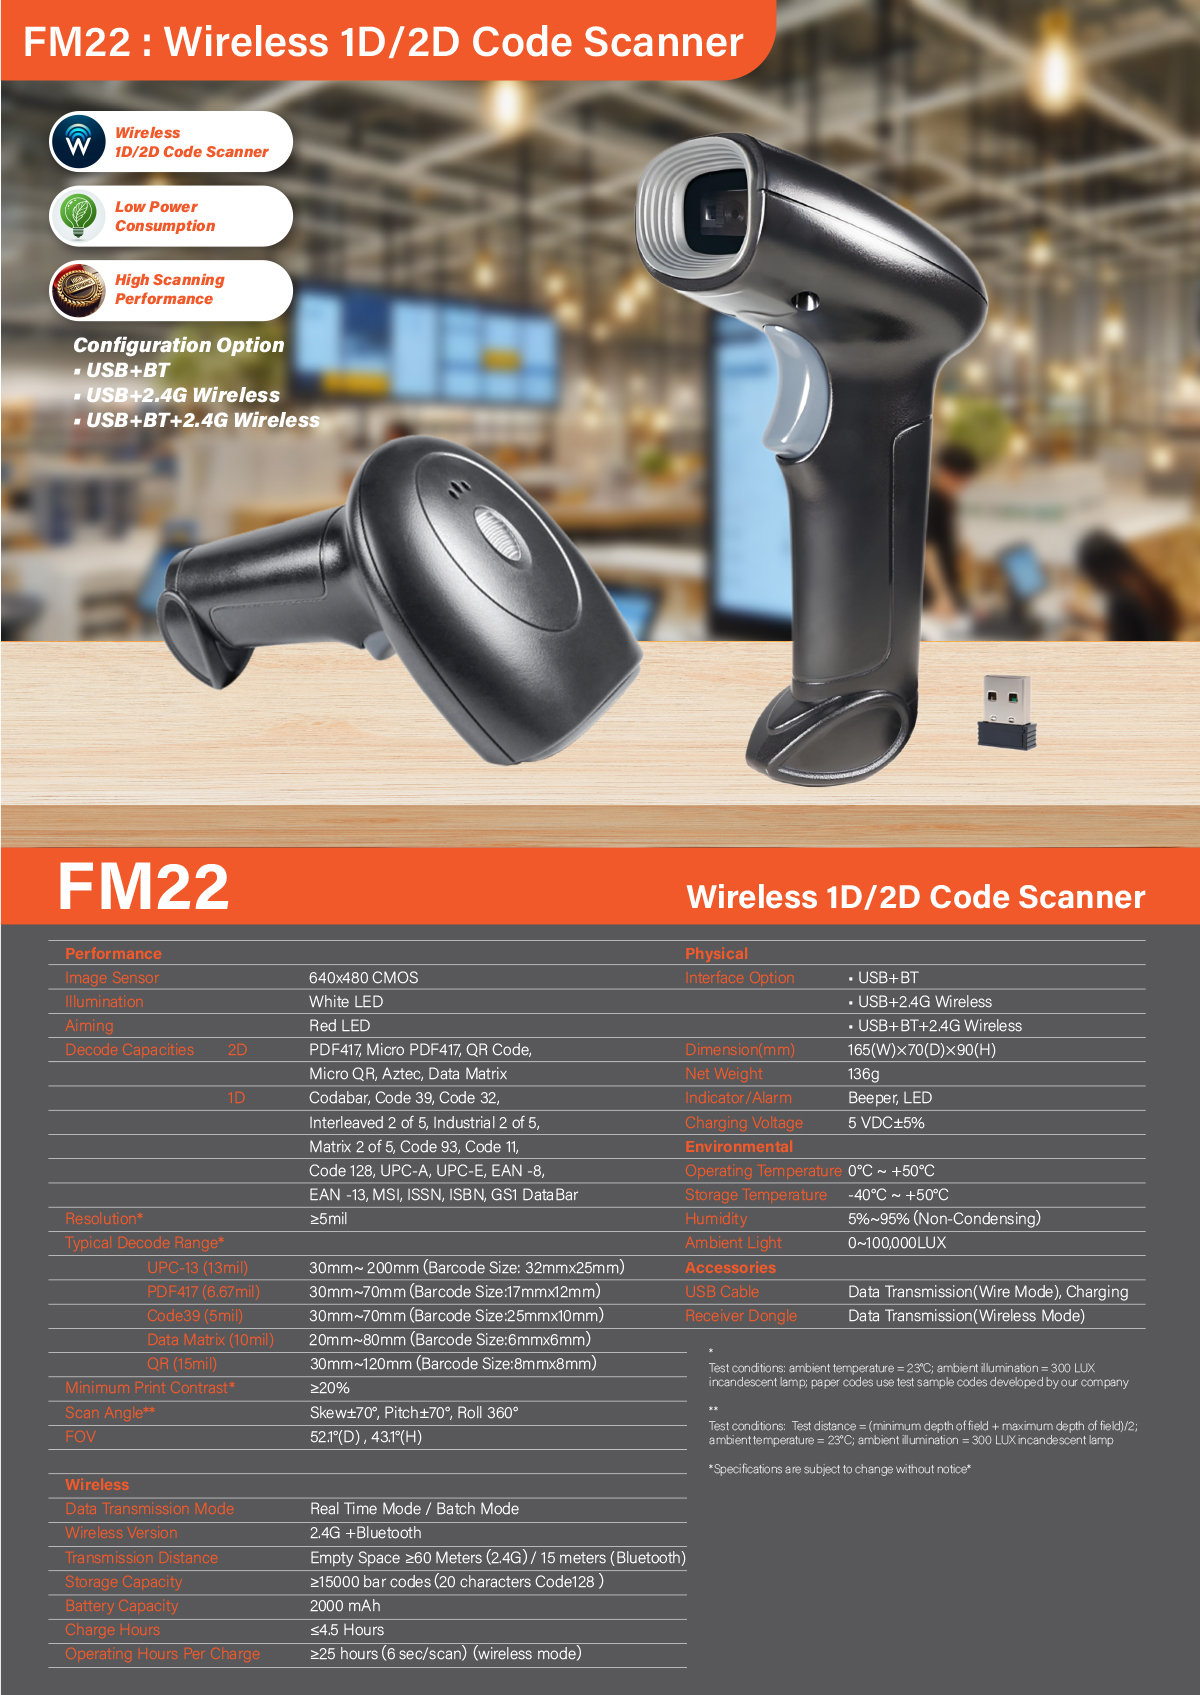 FM22 Wireless 1D&2D Code Scanner